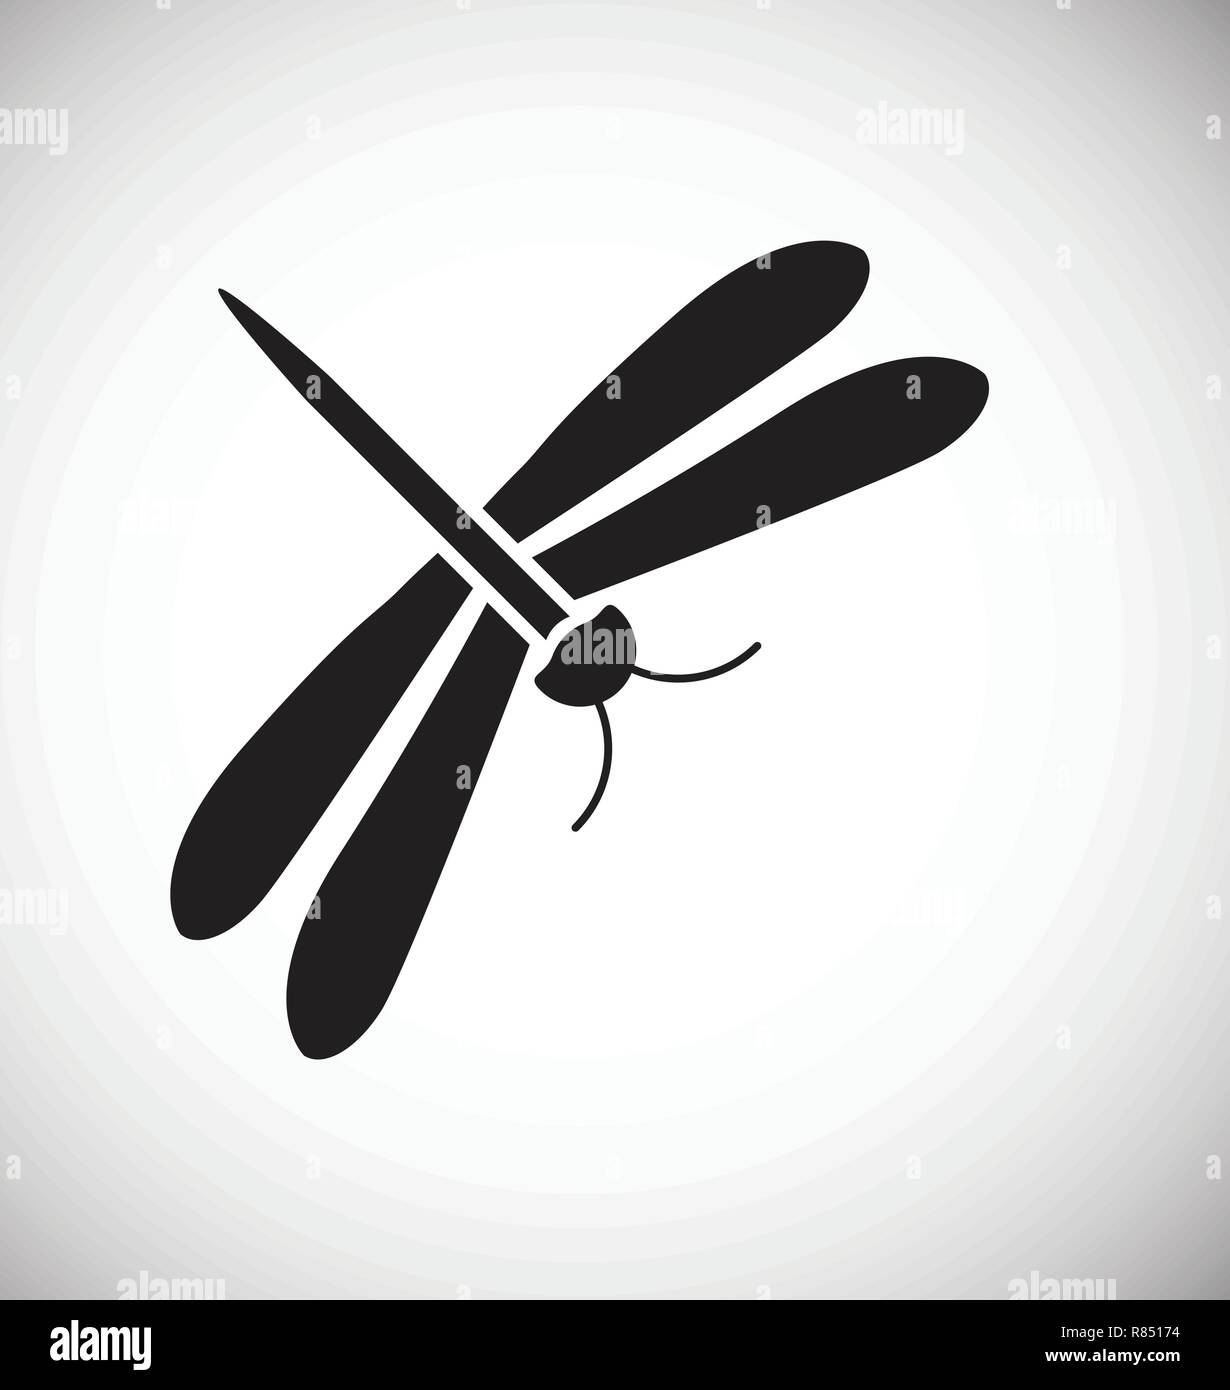 Icona a forma di libellula su sfondo bianco per grafica e web design, moderno vettore semplice segno. Concetto di Internet. Il simbolo alla moda per il design del sito web o del pulsante mobile app. Illustrazione Vettoriale